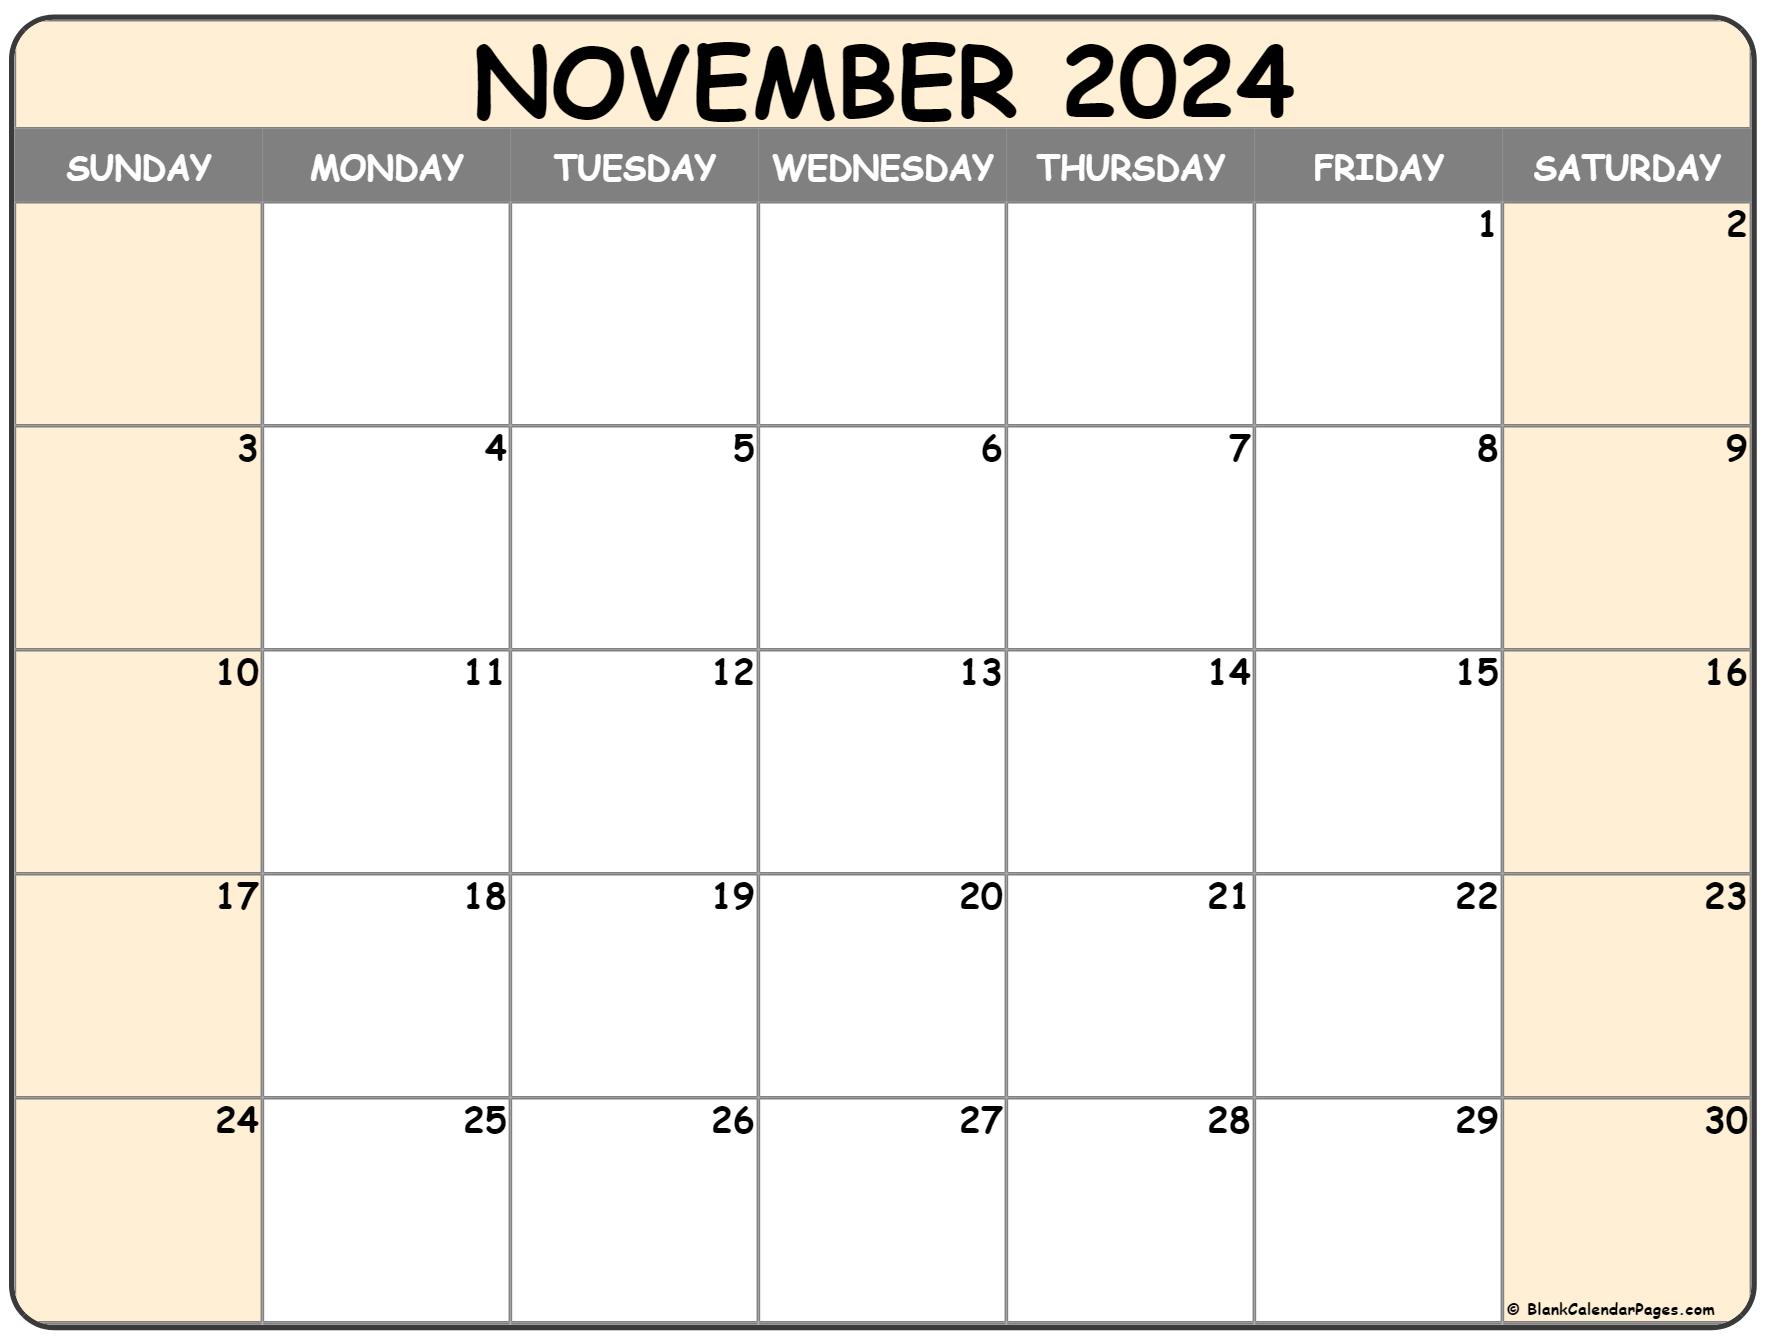 November 2022 calendar free printable calendar templates